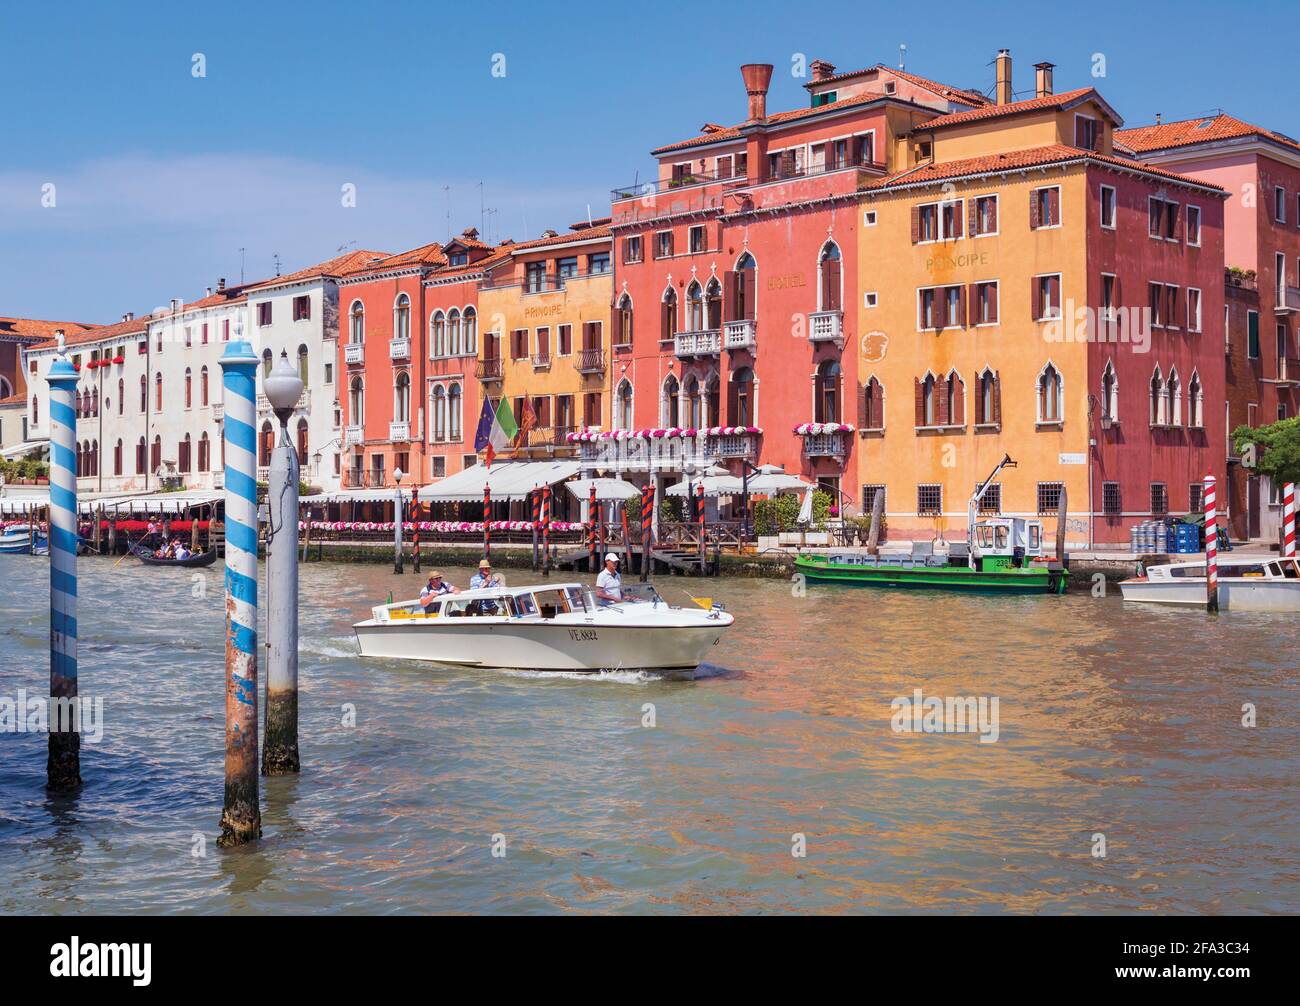 Venecia, Italia. Un taxi acuático con pasajeros hace su recorrido por el Gran Canal. Venecia y su laguna son Patrimonio de la Humanidad de la UNESCO. Foto de stock